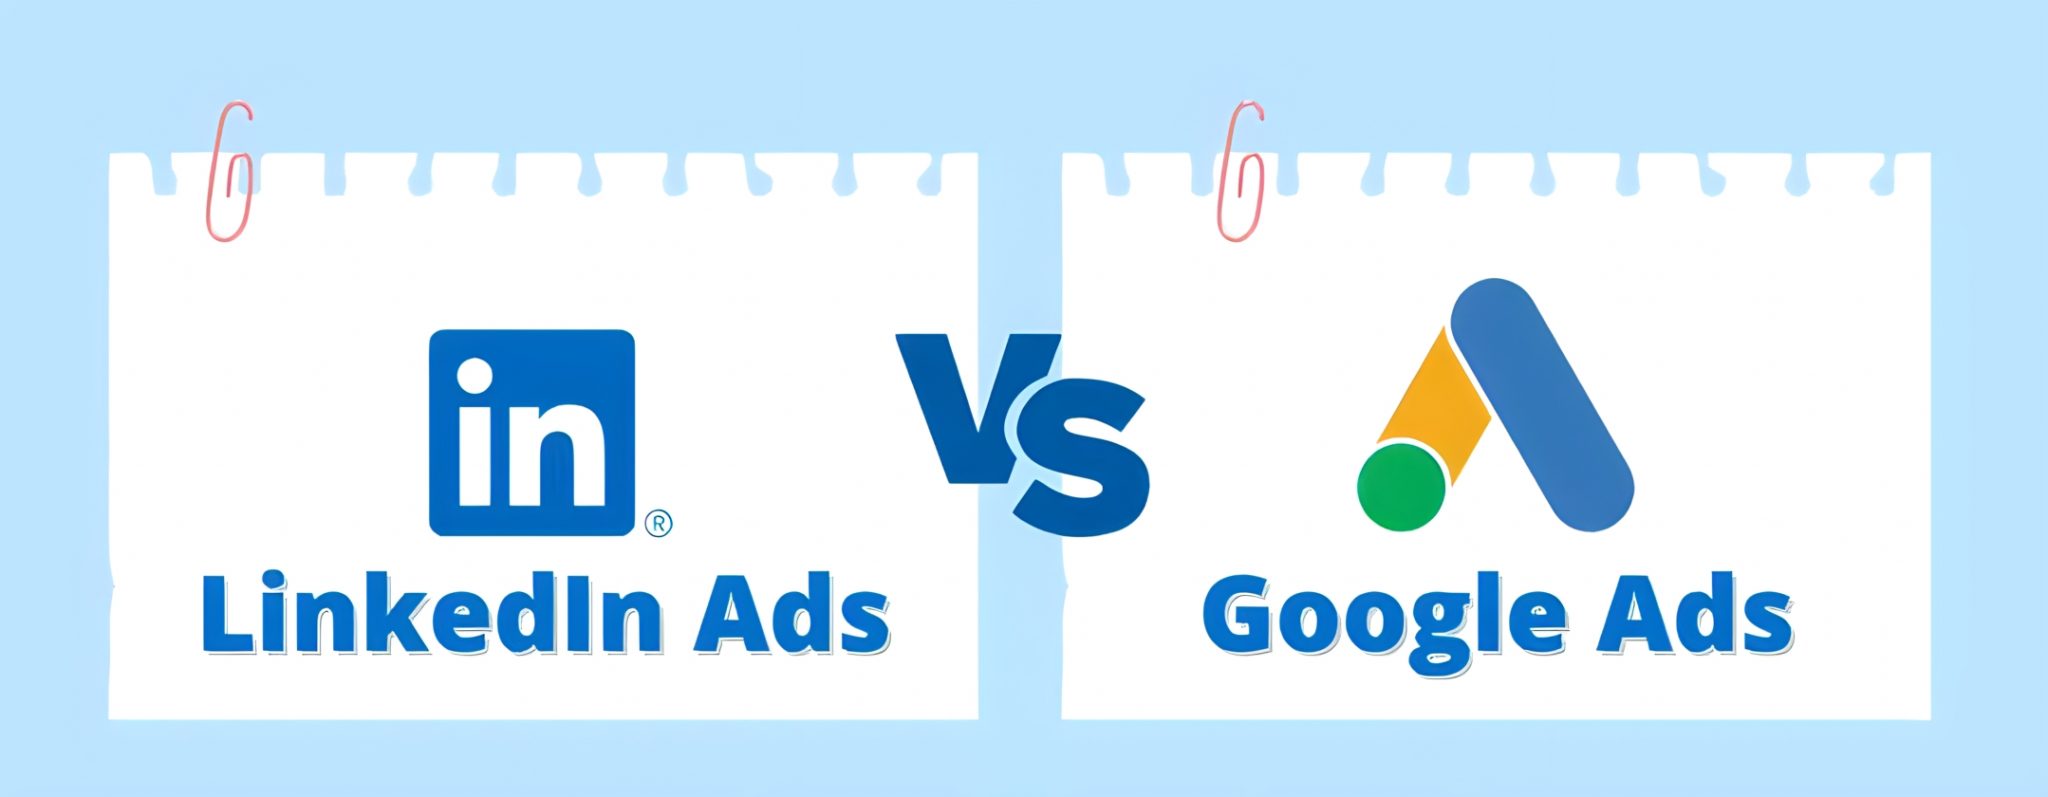 مقارنة بين إعلانات جوجل وإعلانات لينكدإن لشركات B2C وB2B